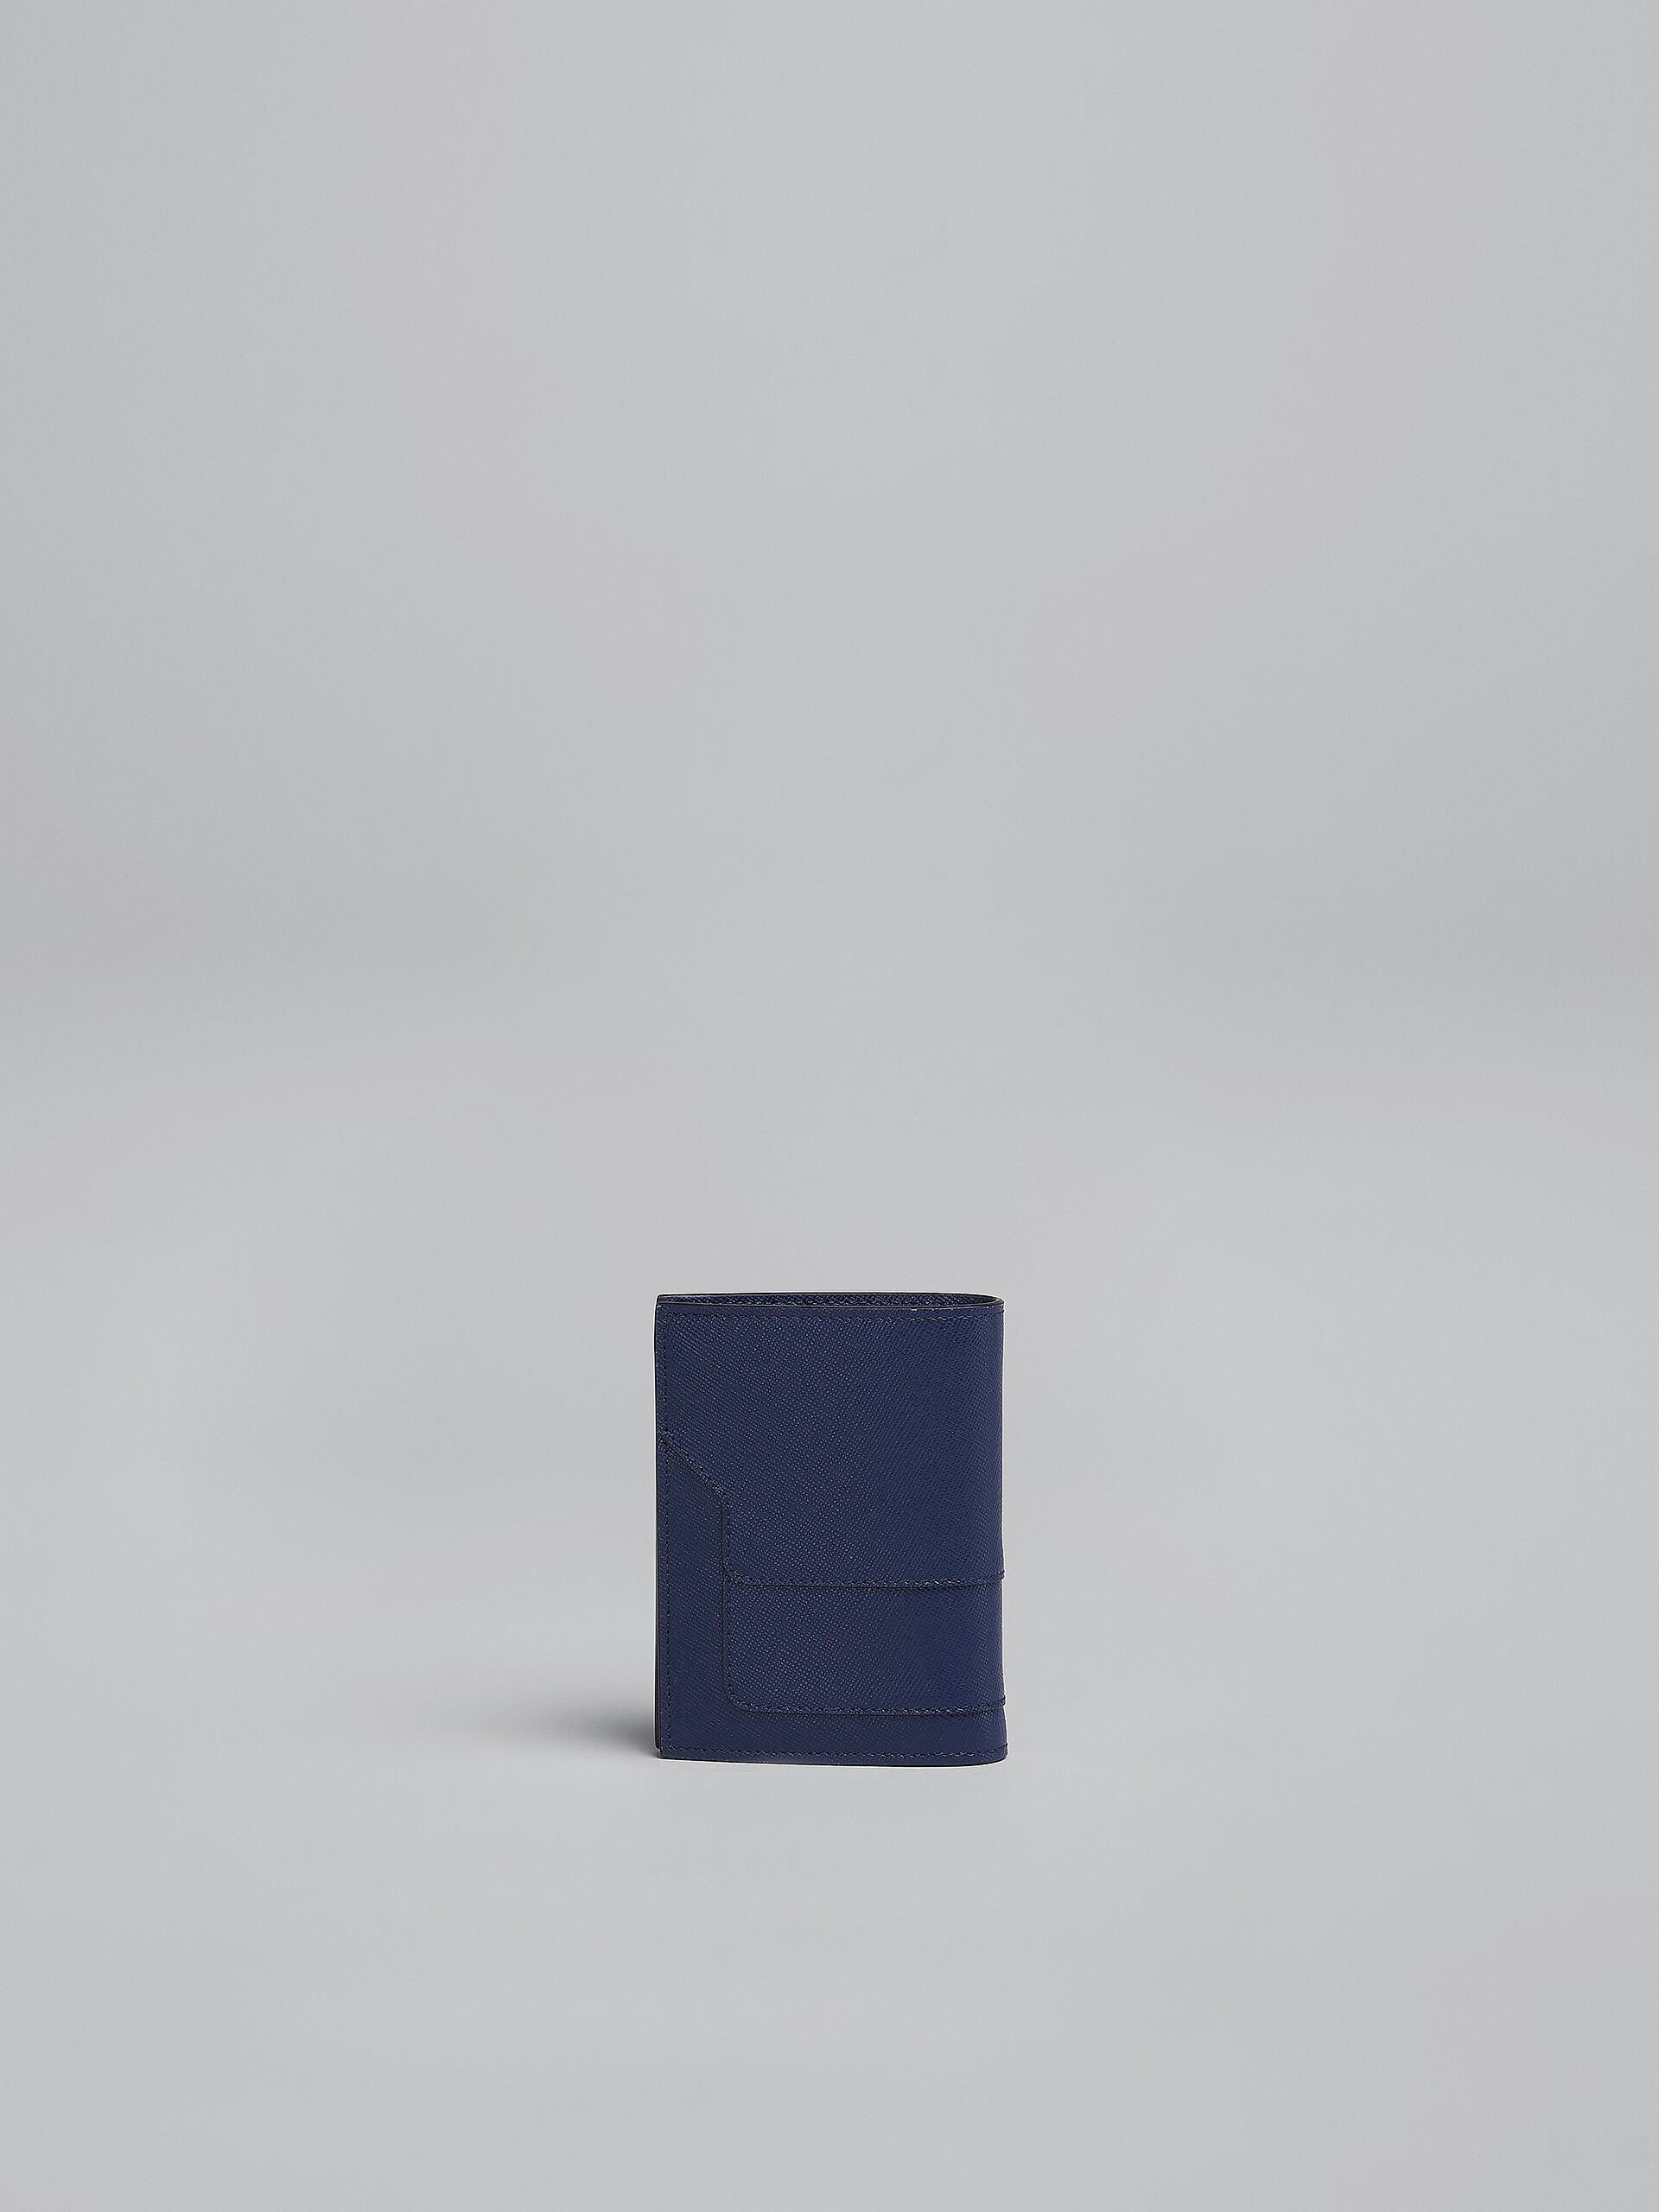 Zweifache Faltbrieftasche aus blauem Saffiano-Leder - Brieftaschen - Image 3